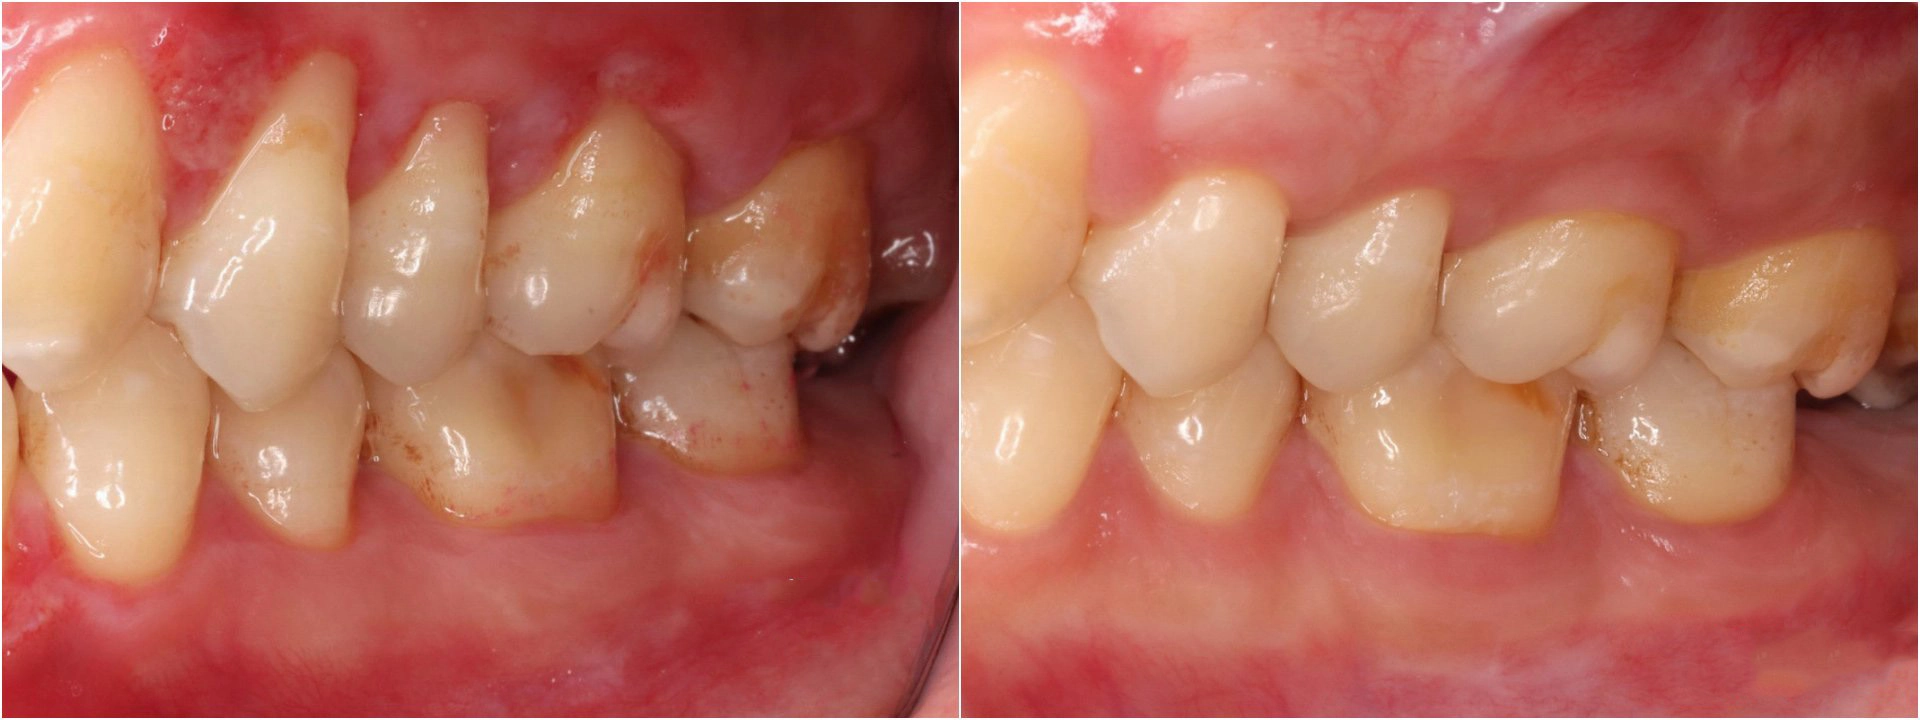 術前因牙齦退縮，牙齒明顯變長(左圖)；透過「皮下結締組織移植術」執行牙根覆蓋手術，牙齦長回正常的厚度、高度。(右圖)